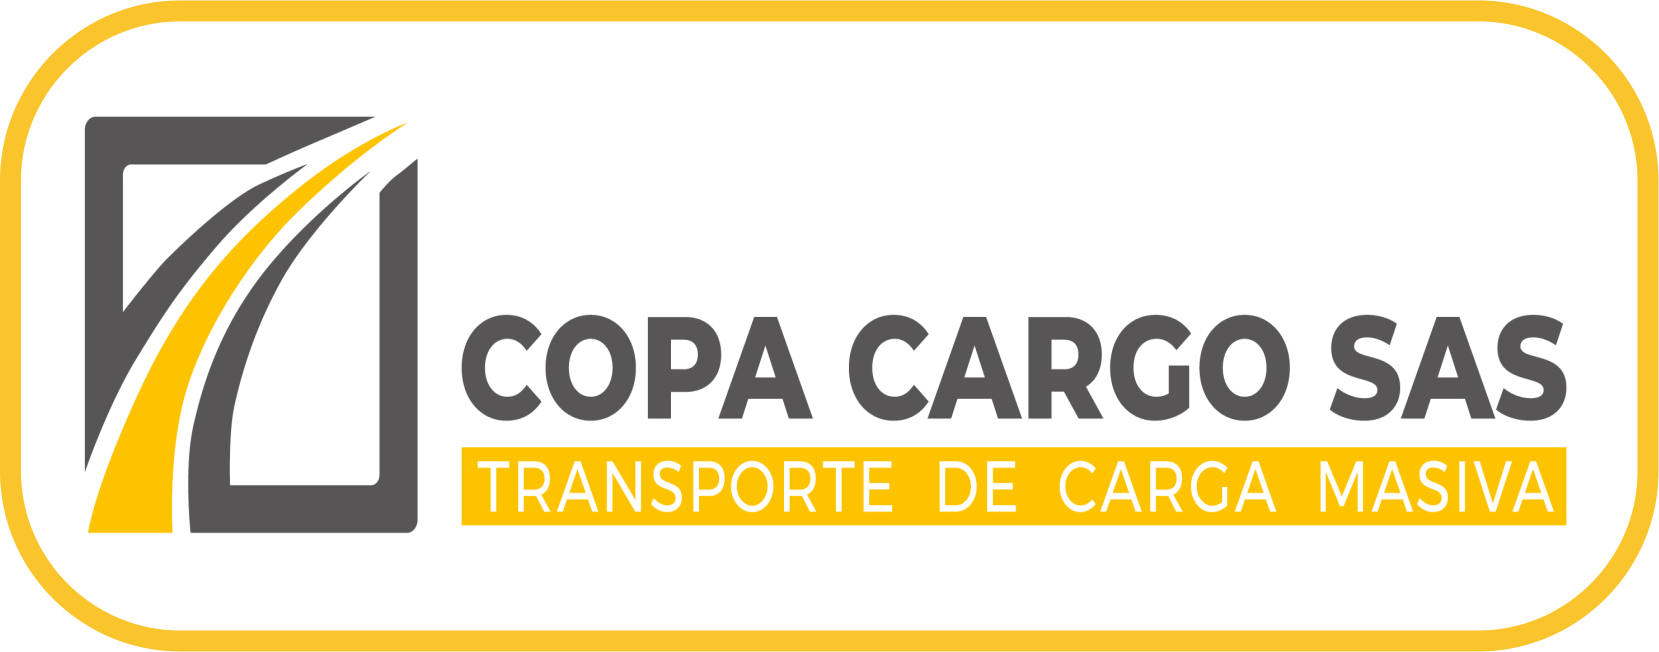 TRANSPORTE DE CARGA COPA